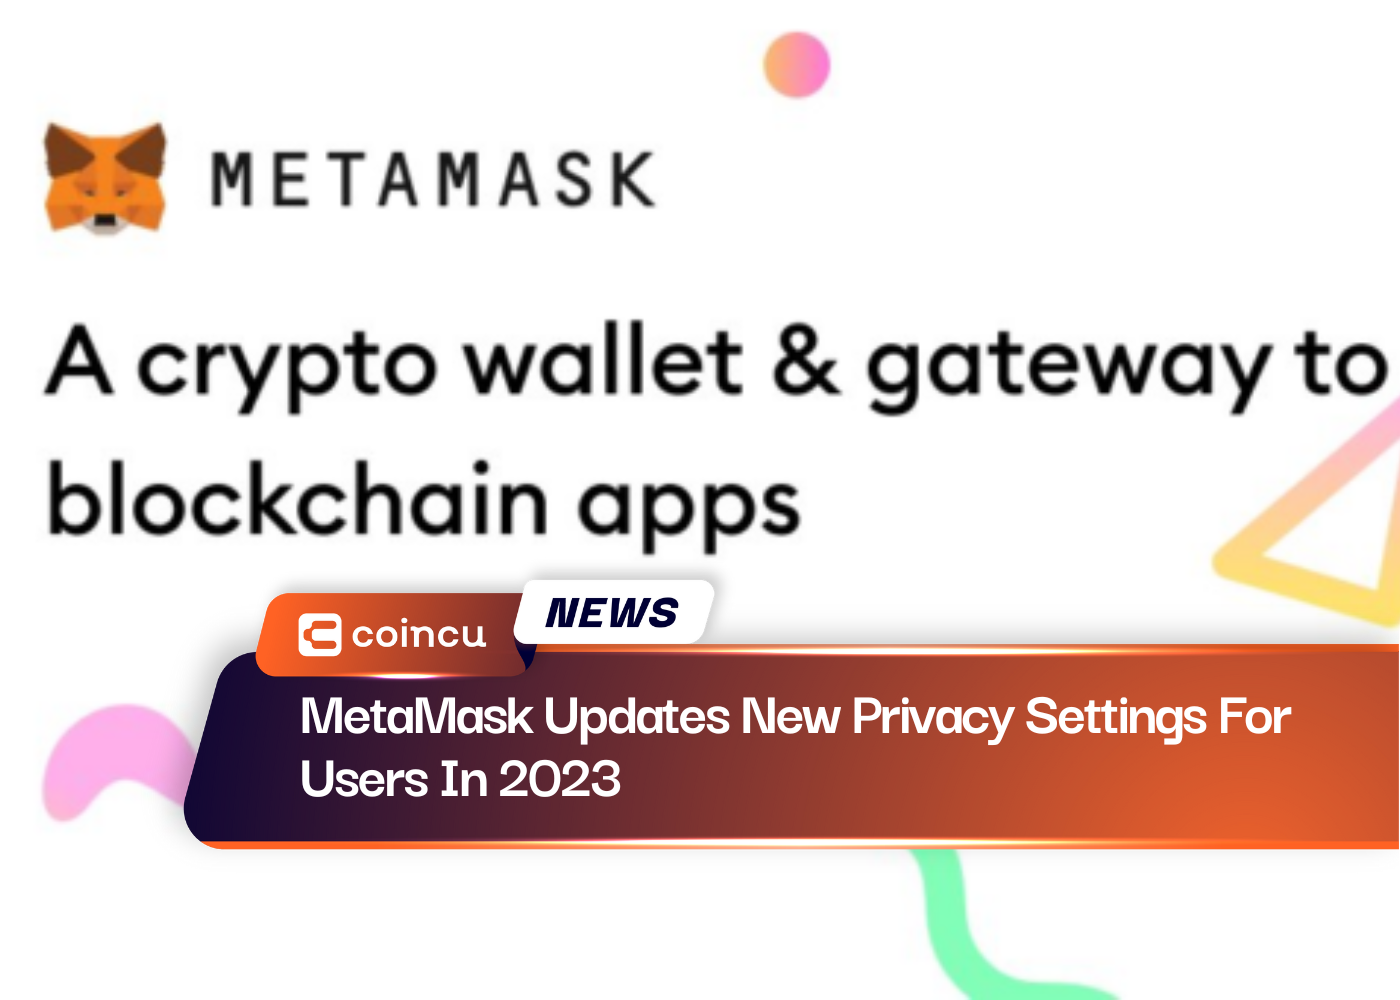 يقوم MetaMask بتحديث إعدادات الخصوصية الجديدة للمستخدمين في عام 2023